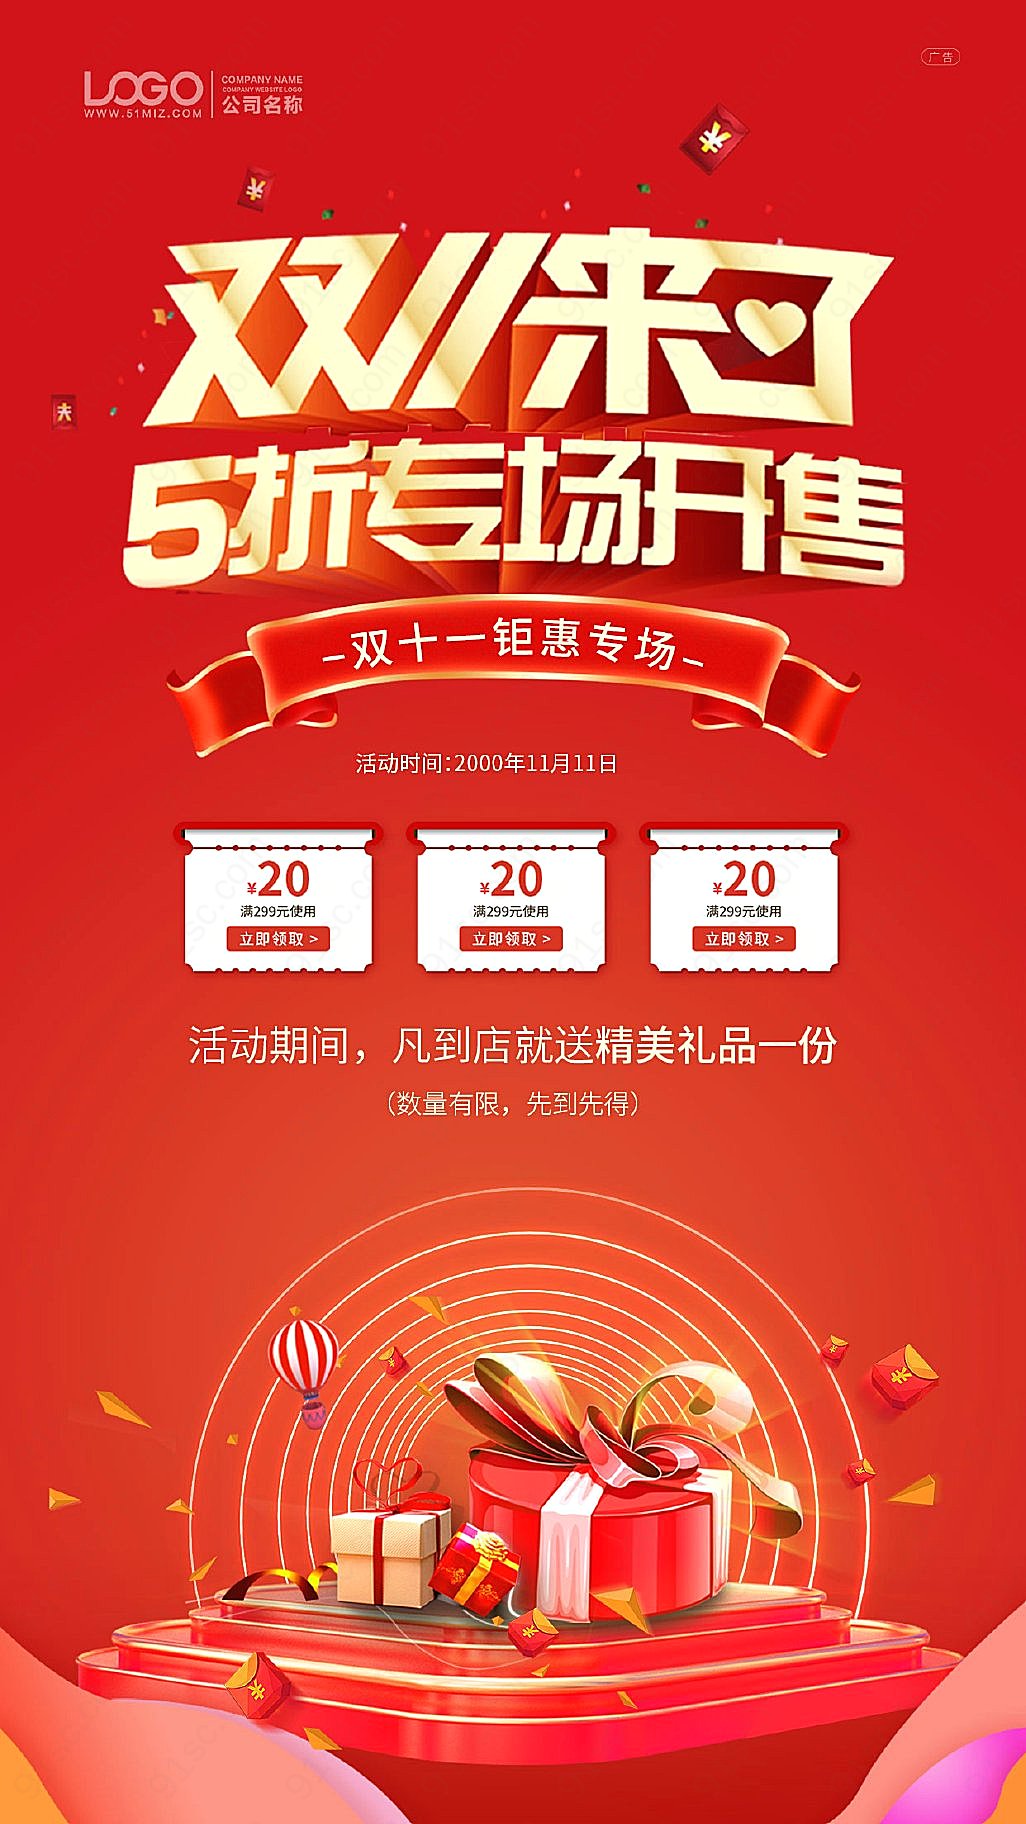 双十一购物狂欢节红色手机UI海报简约大气巨优惠新媒体用图下载